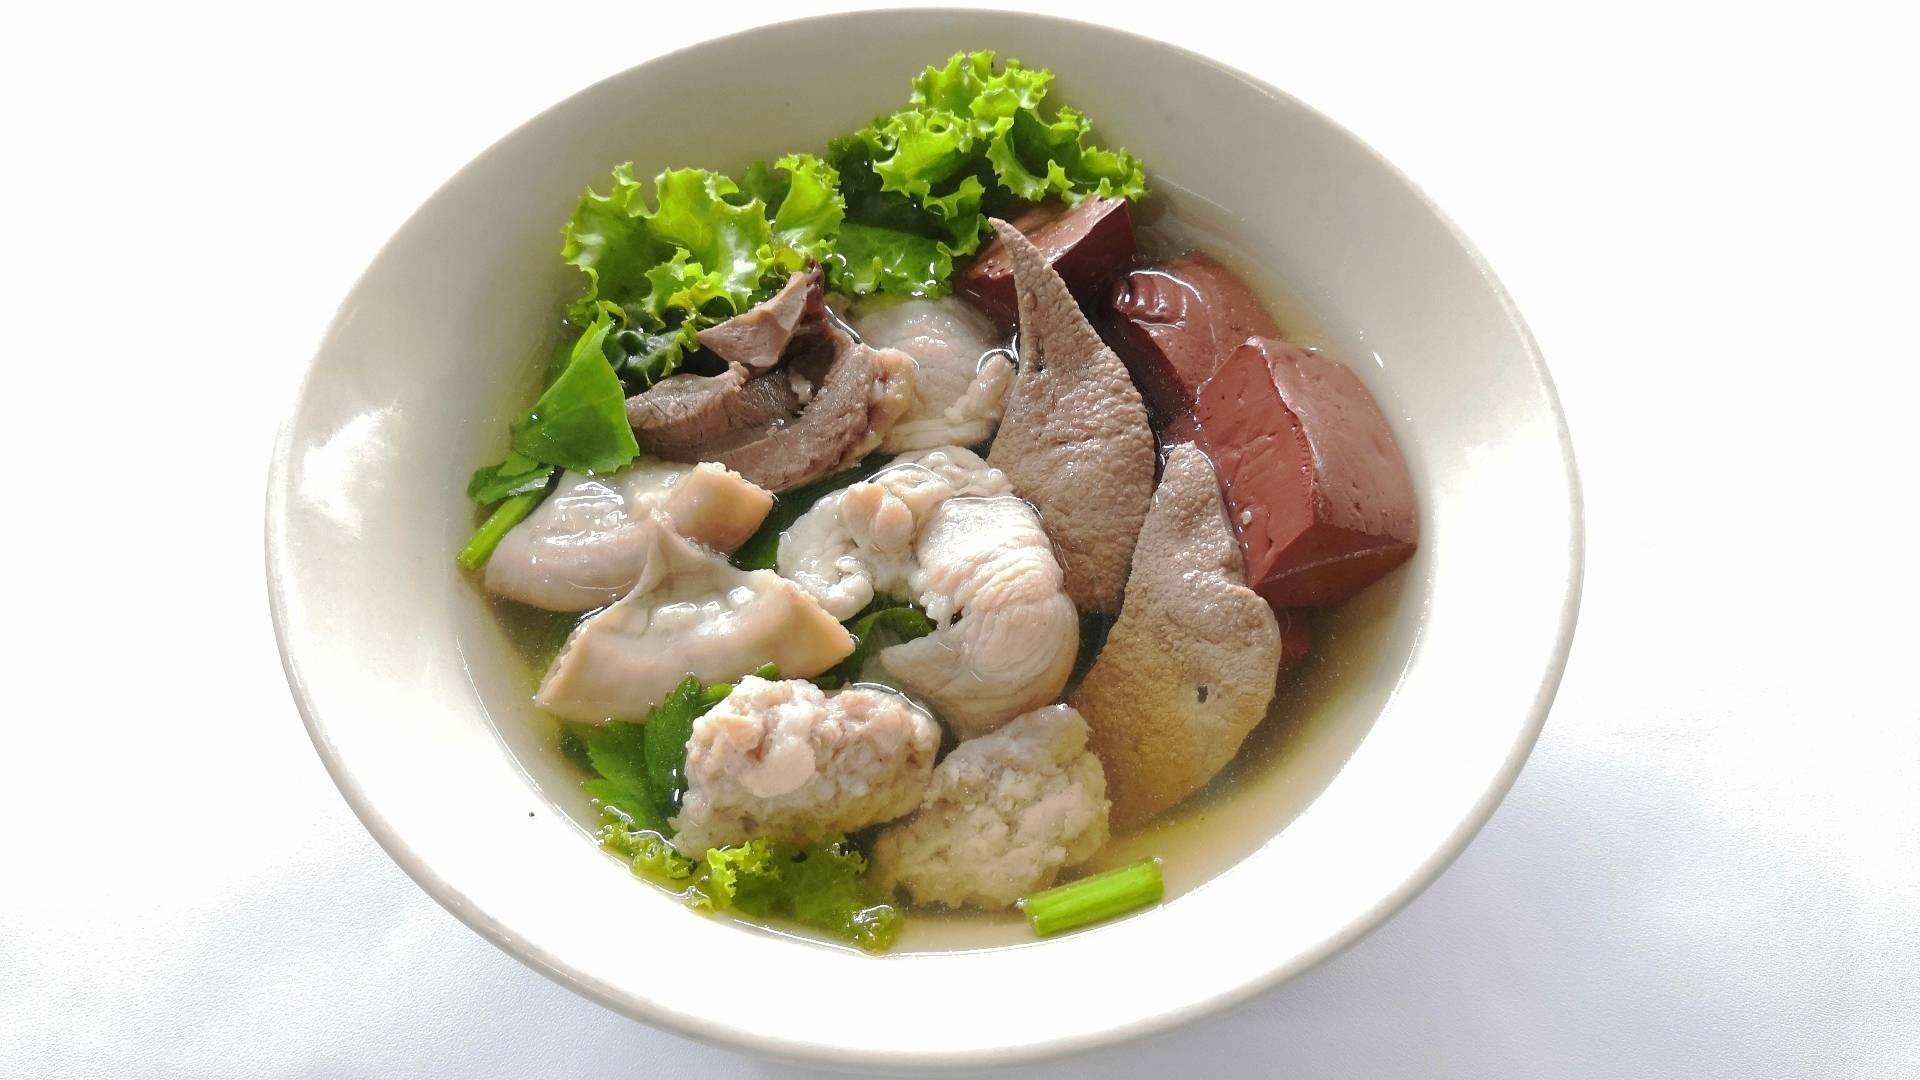 เฮียตี๋ ต้มเลือดหมู - คู้บอน 42 - สั่งอาหารเดลิเวอรี | Wongnai x LINE MAN